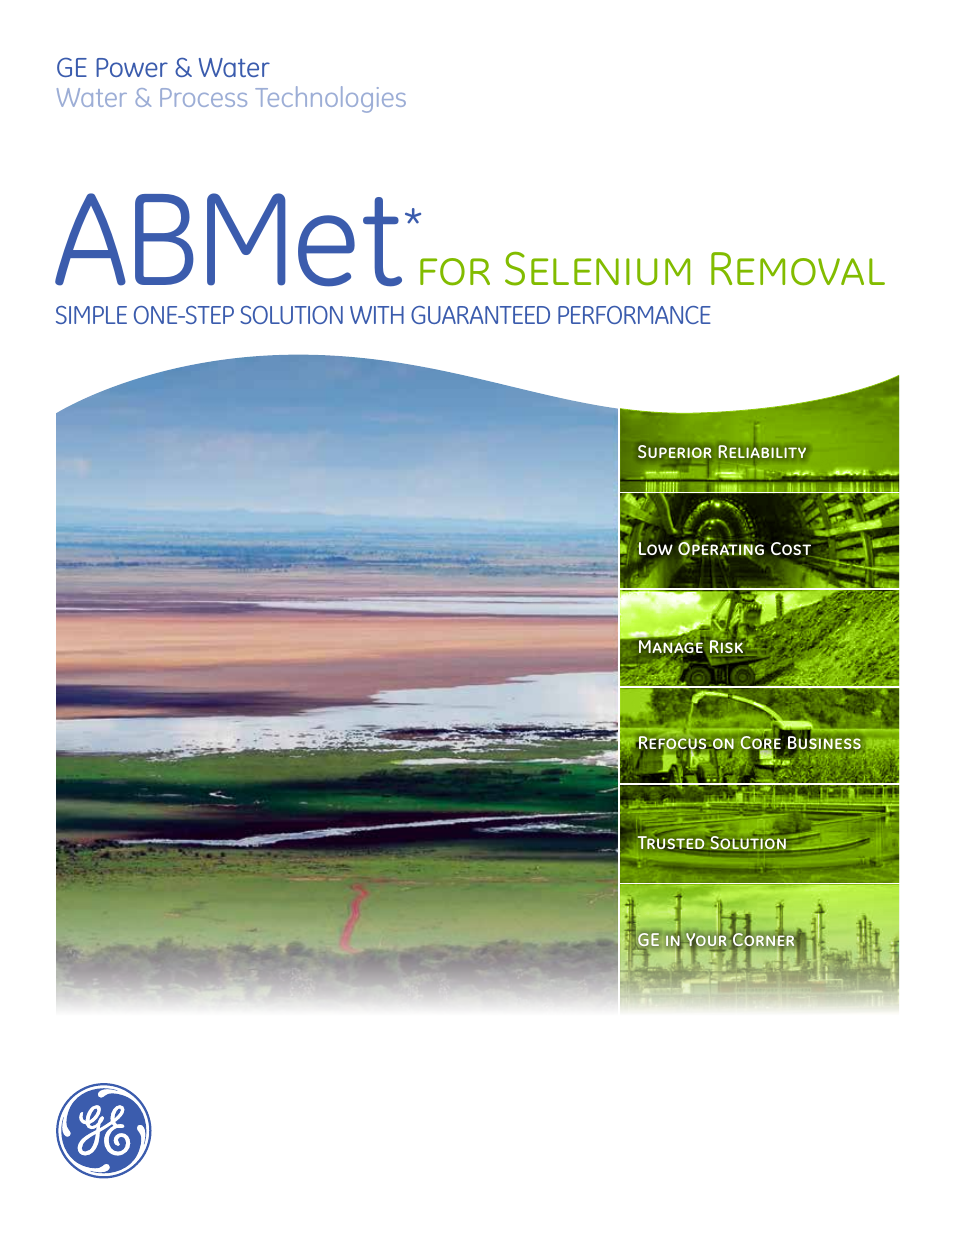 ABMet for Selenium Removal